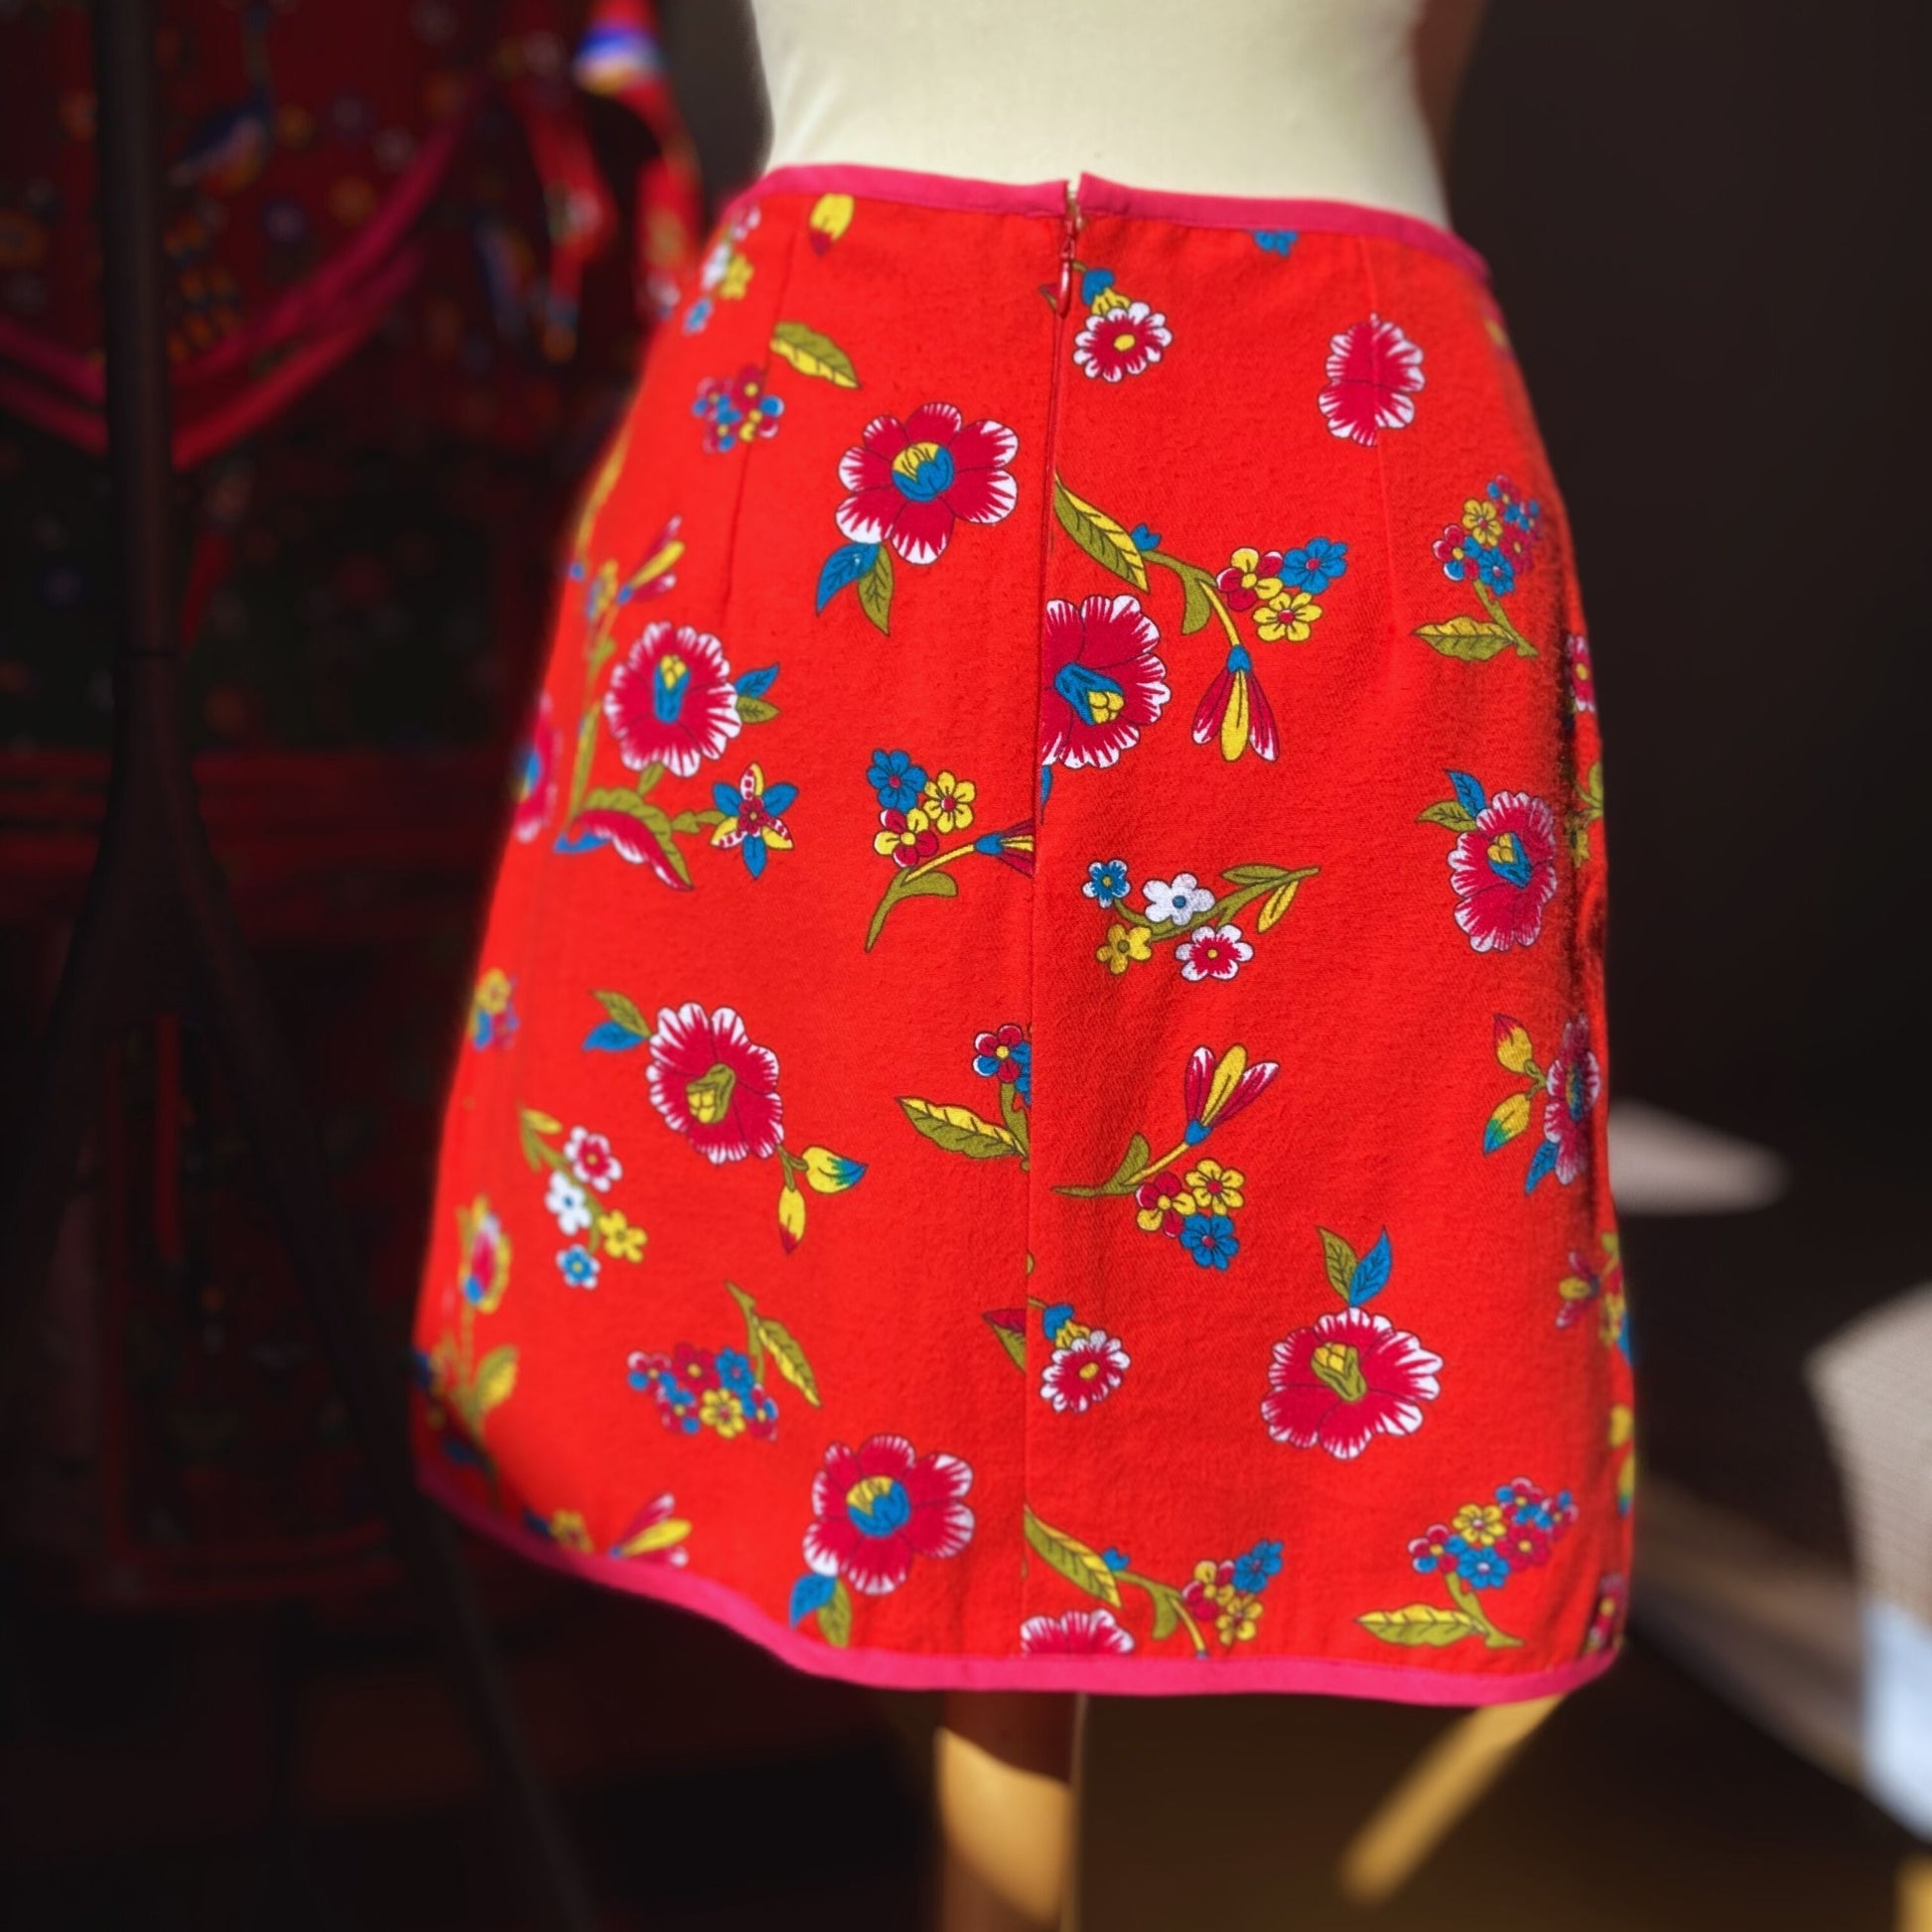 Retro Mini Skirt